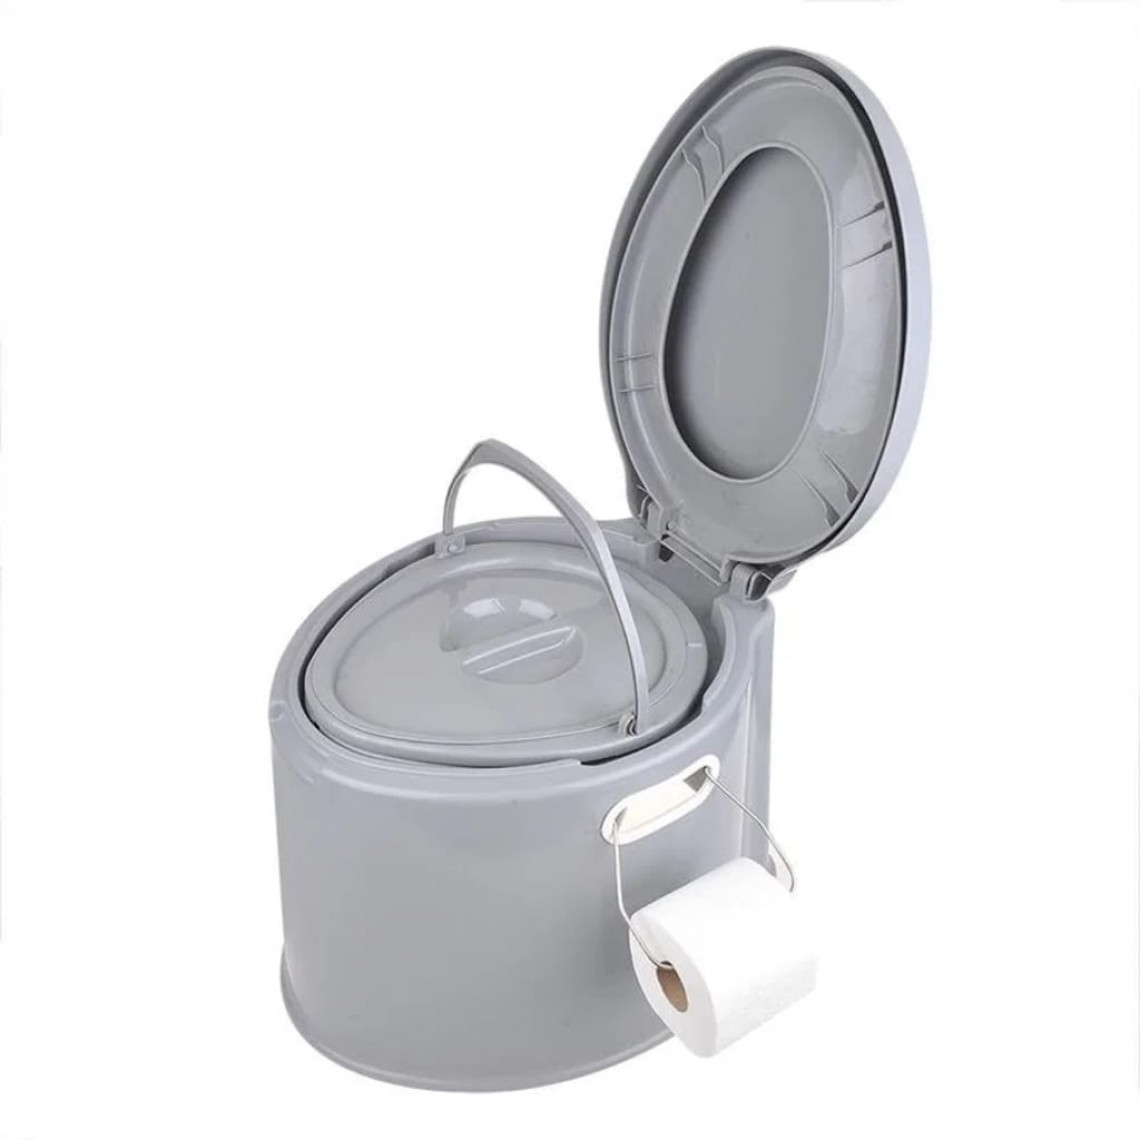 Icaverne - Magnifique Toilettes et douches mobiles selection Panama ProPlus Toilette portable 7 L Gris - WC chimiques